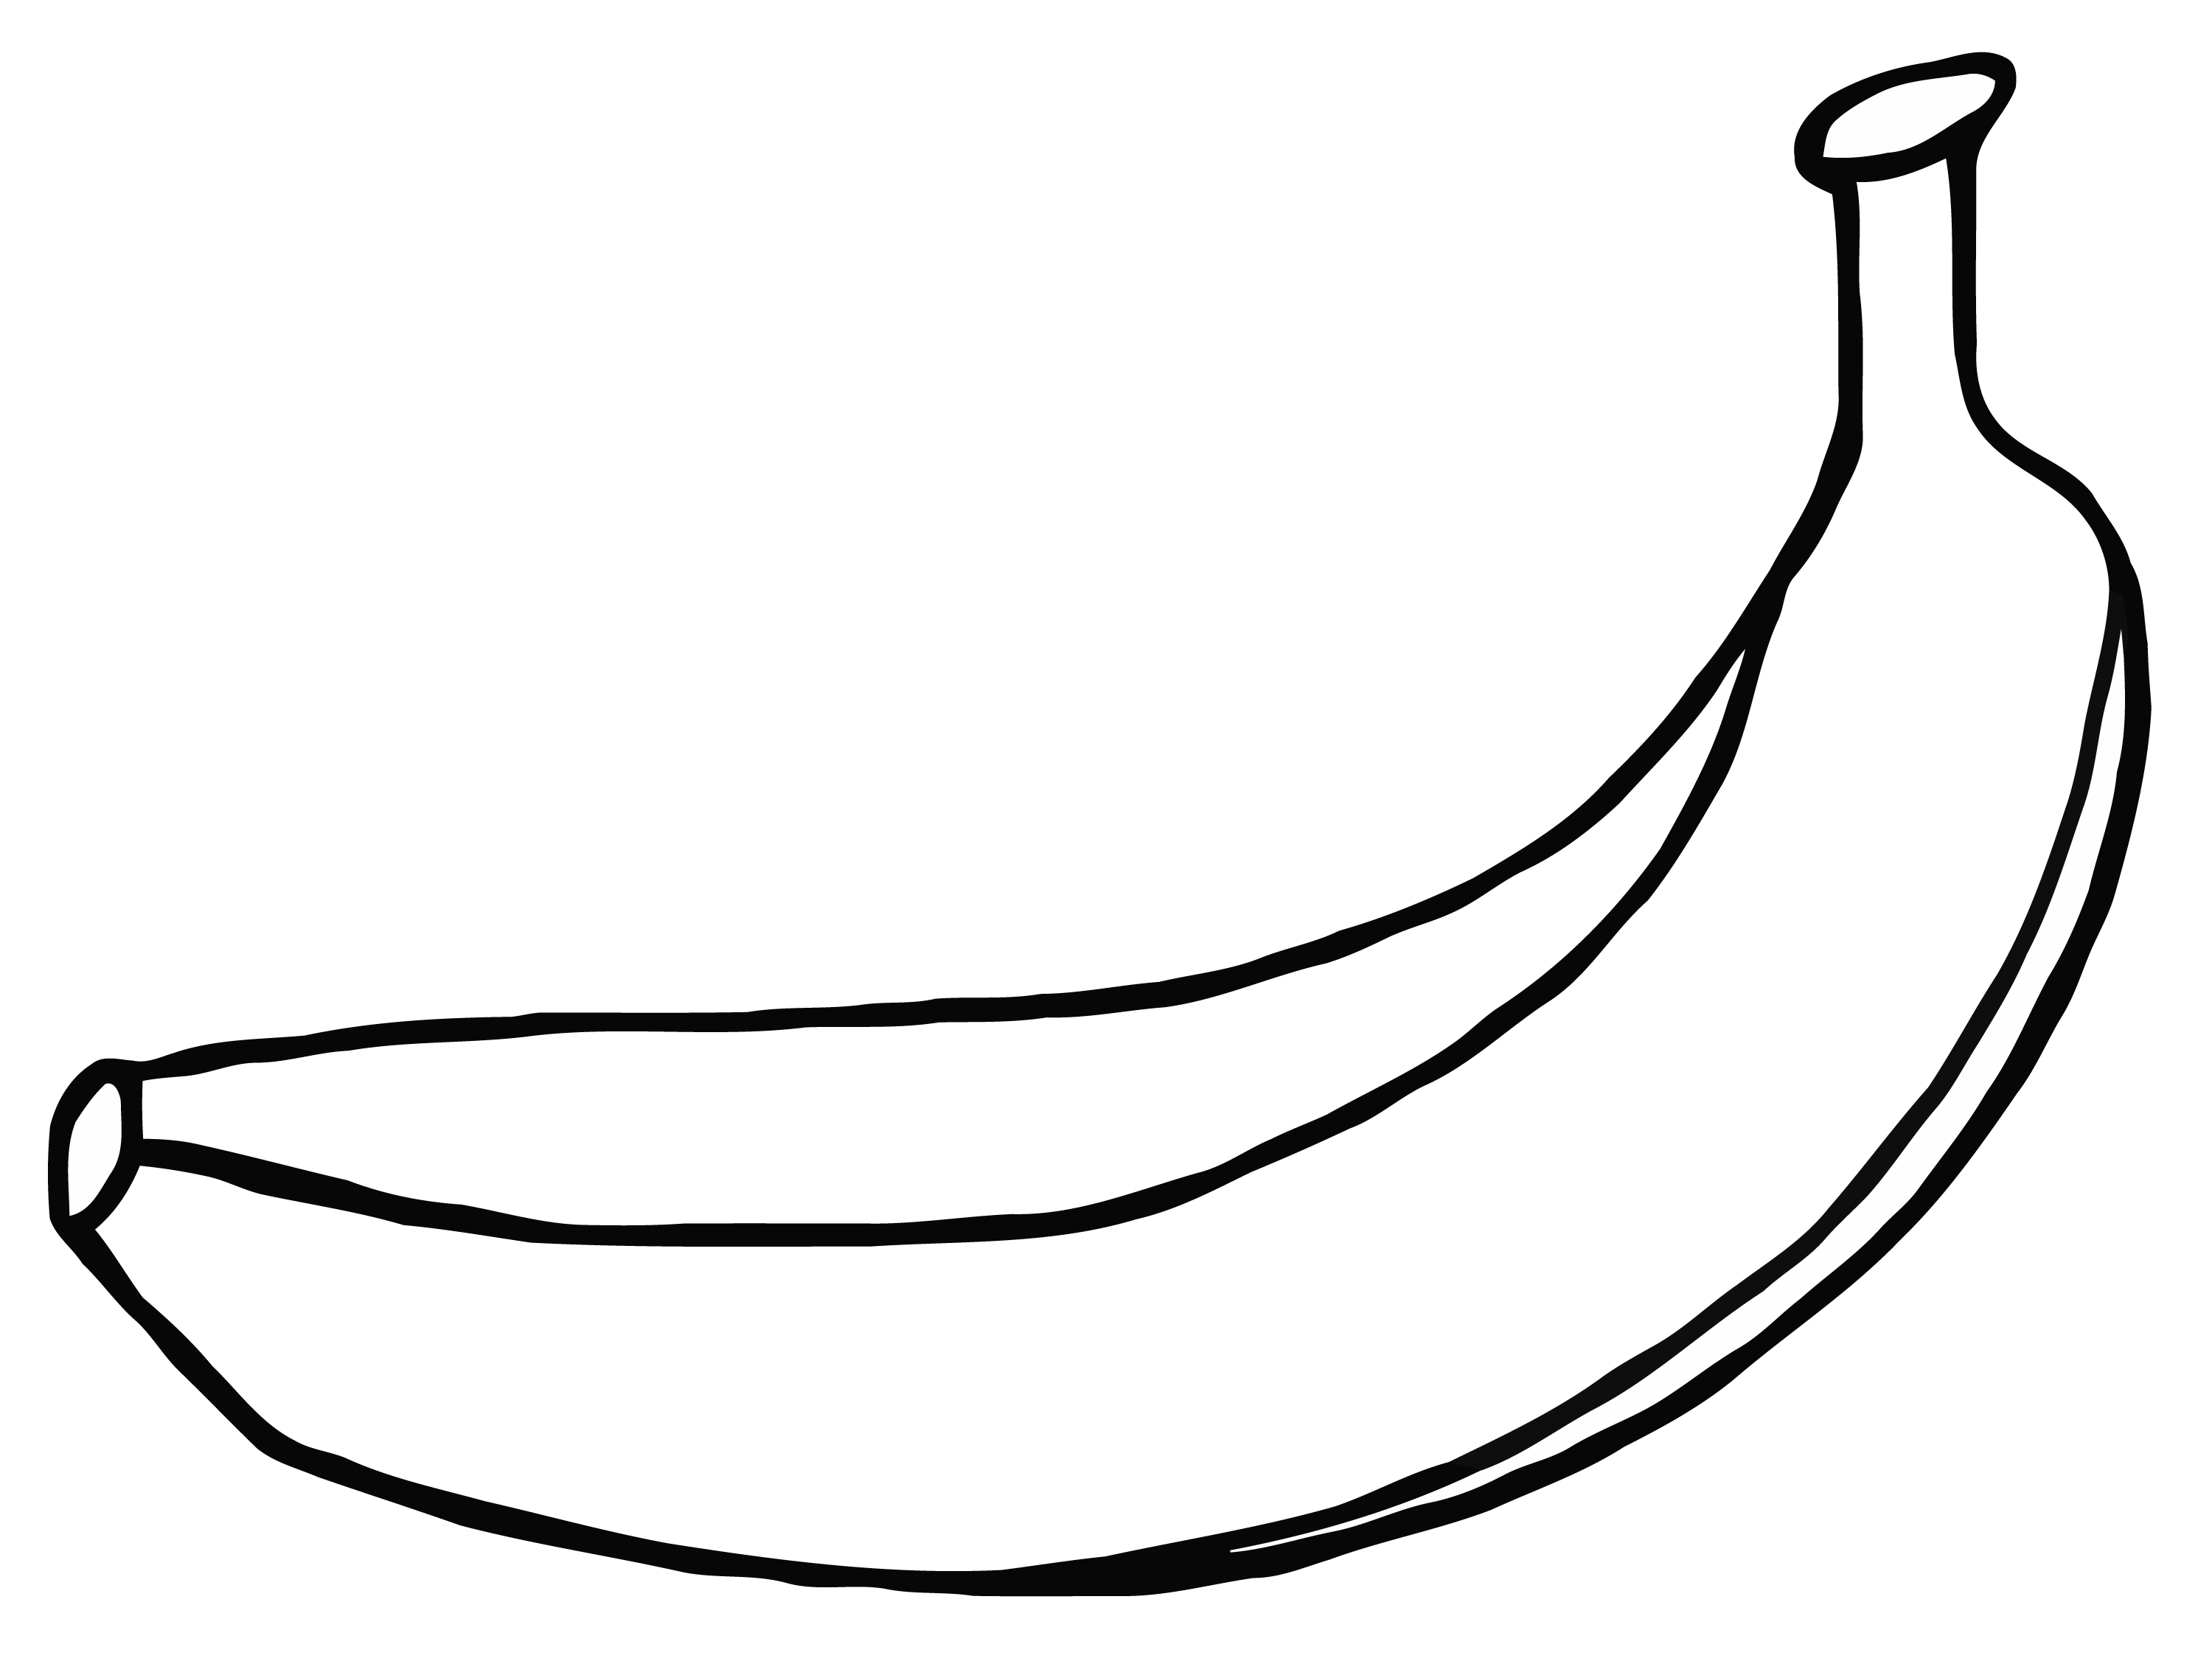 Banana outline clip art